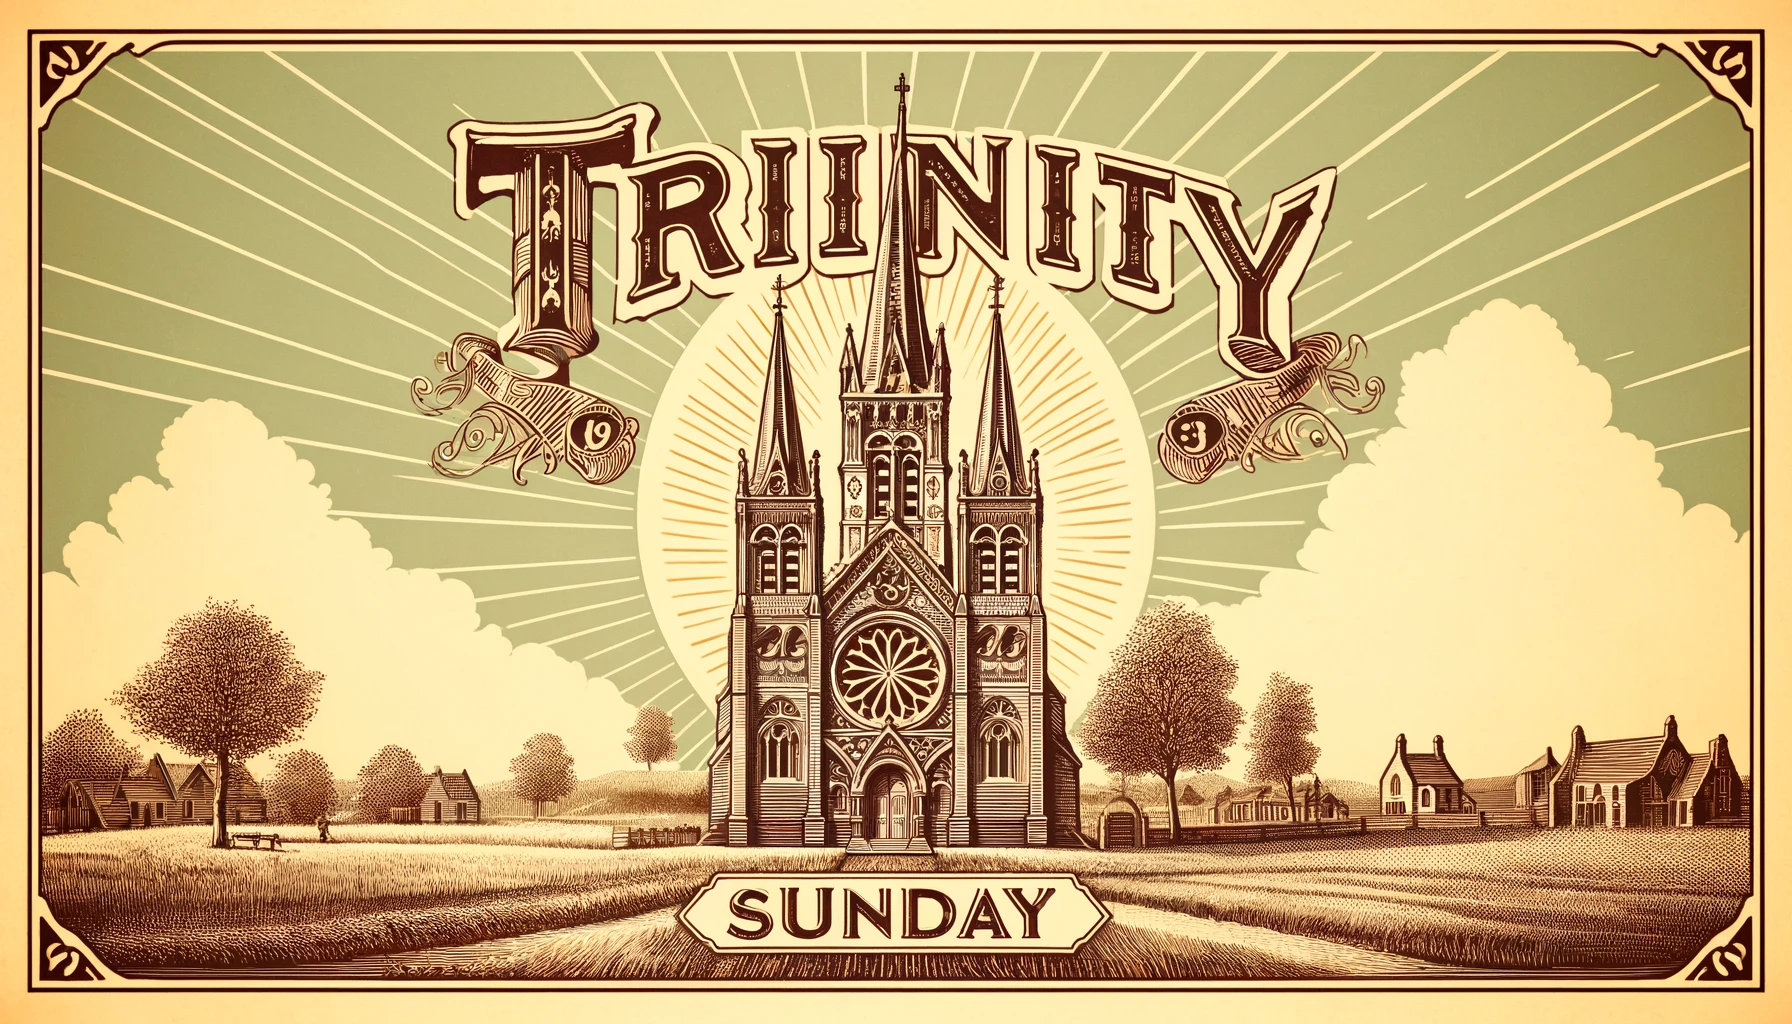 Heartfelt Trinity Sunday Prayers for the Faithful